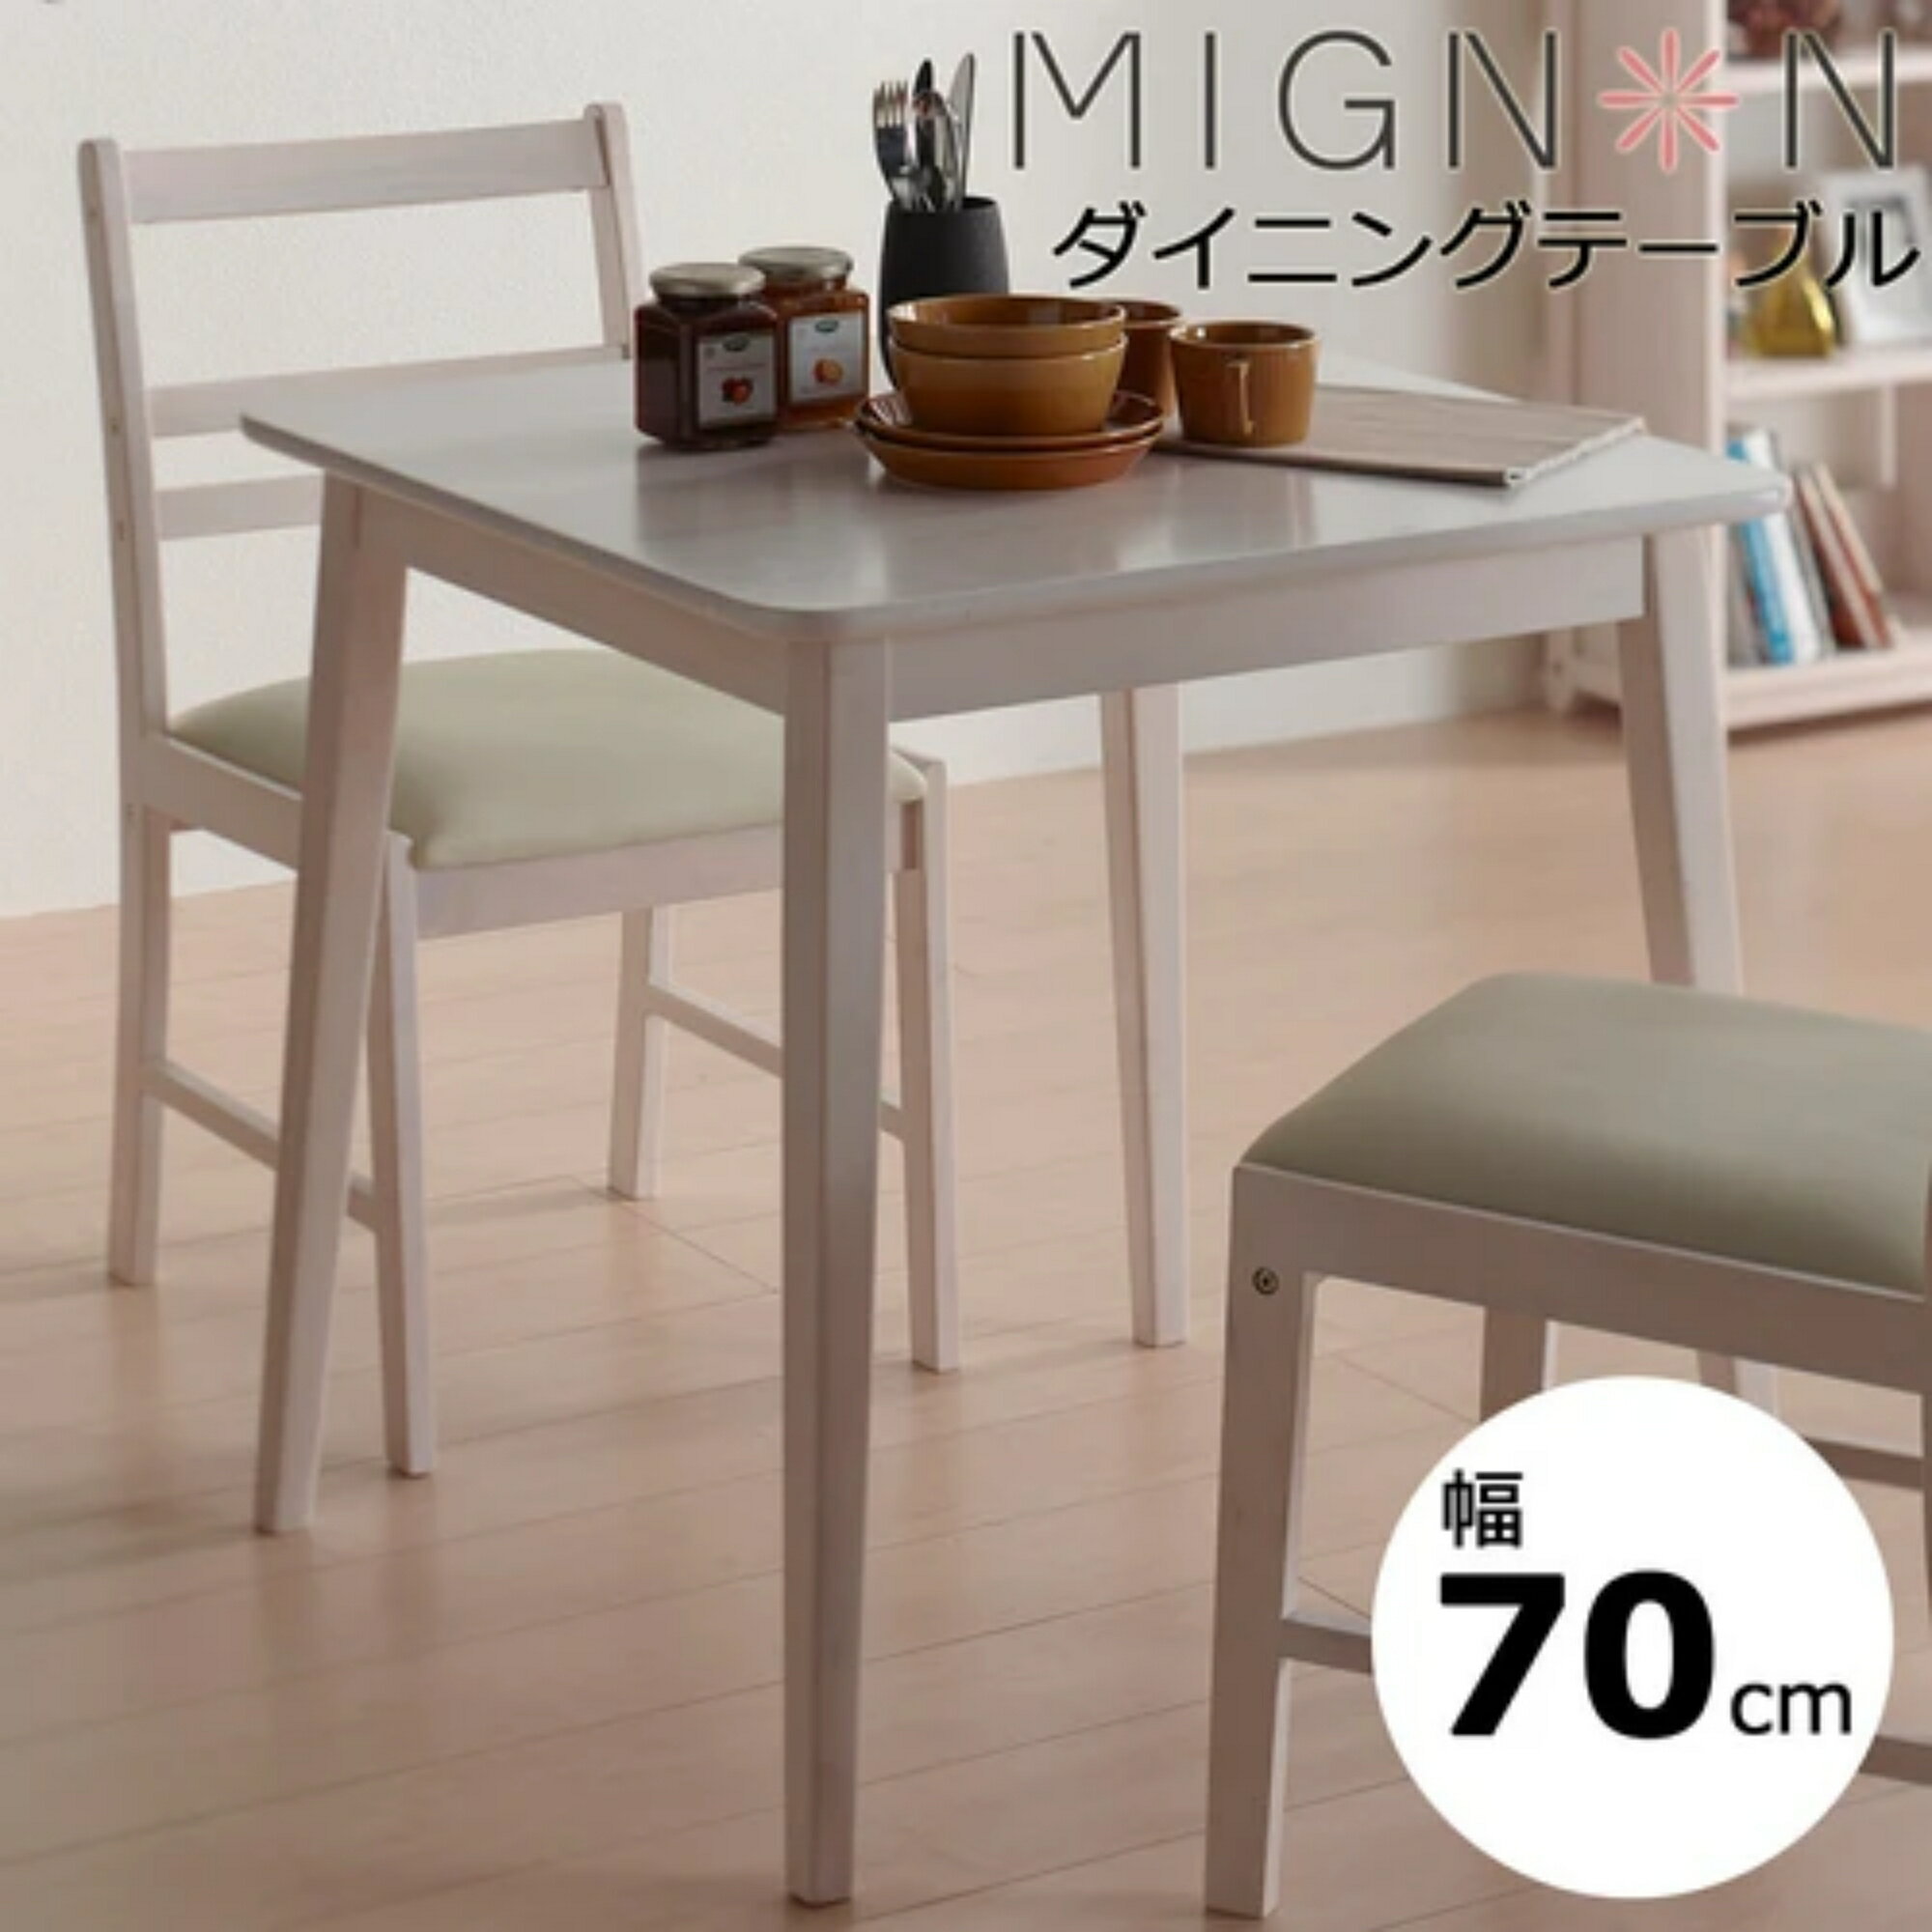 ミニヨンダイニングテーブル 2人用 ホワイトウォッシュ 幅70cm MIGNON-DT70 MIGNONDT70O koeki